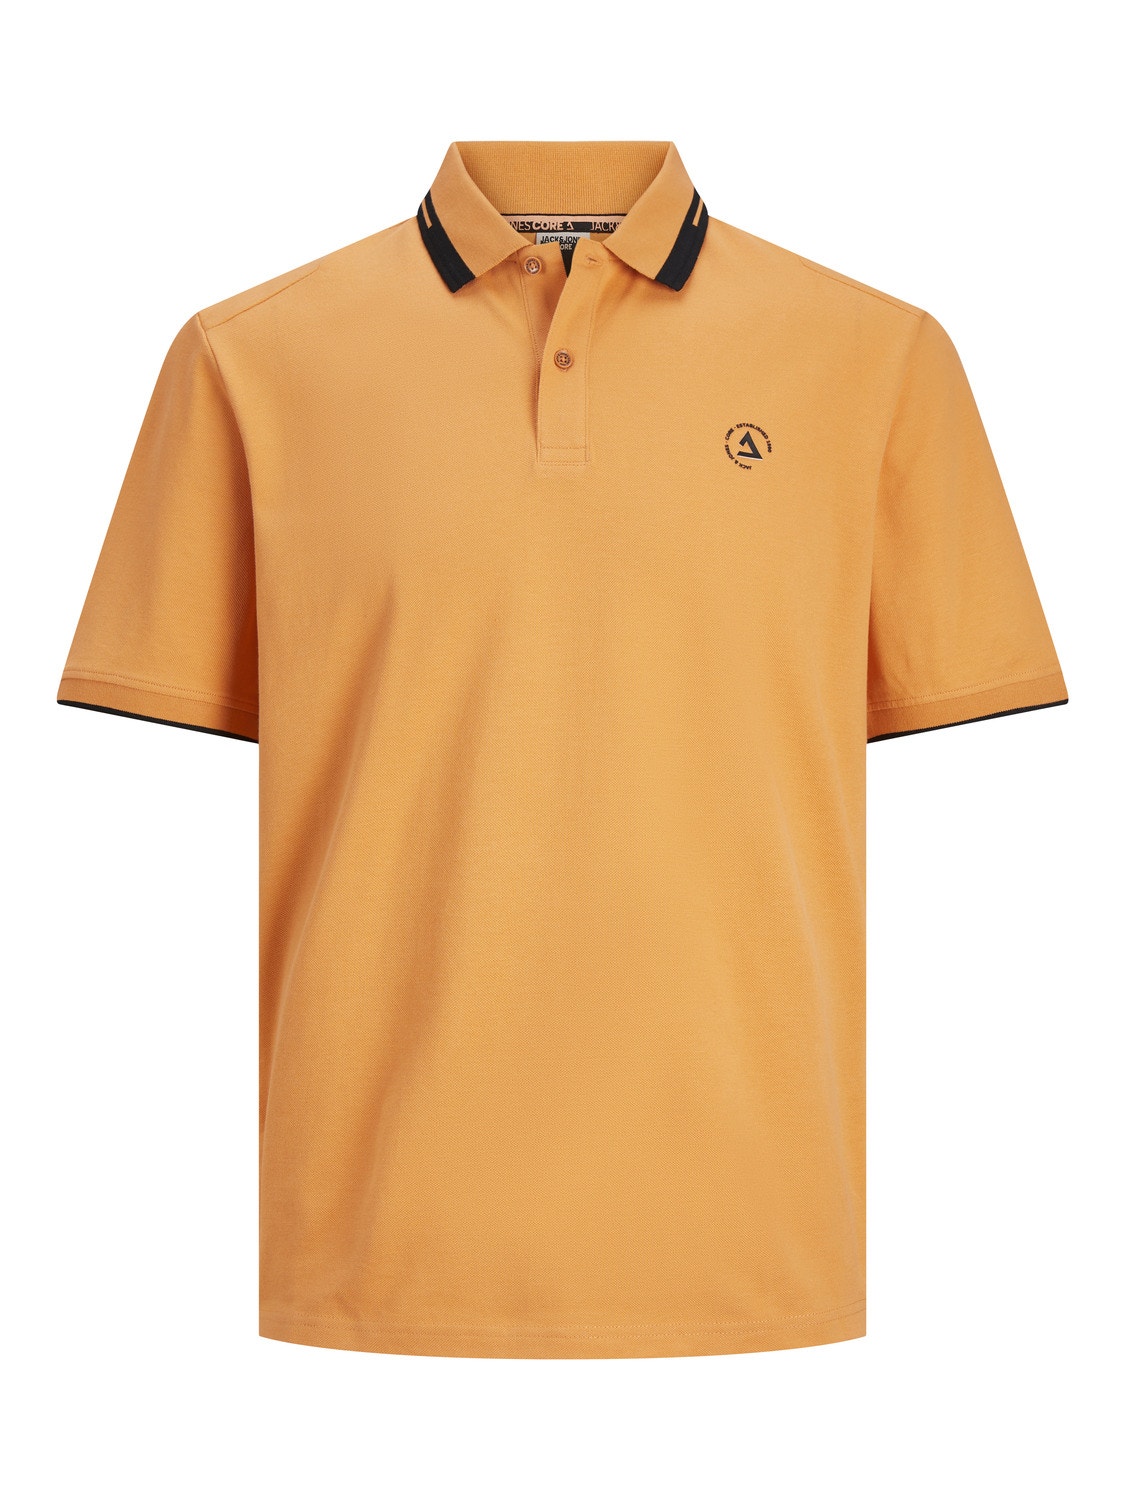 Jack & Jones Plain Polo T-shirt -Tangerine - 12252395